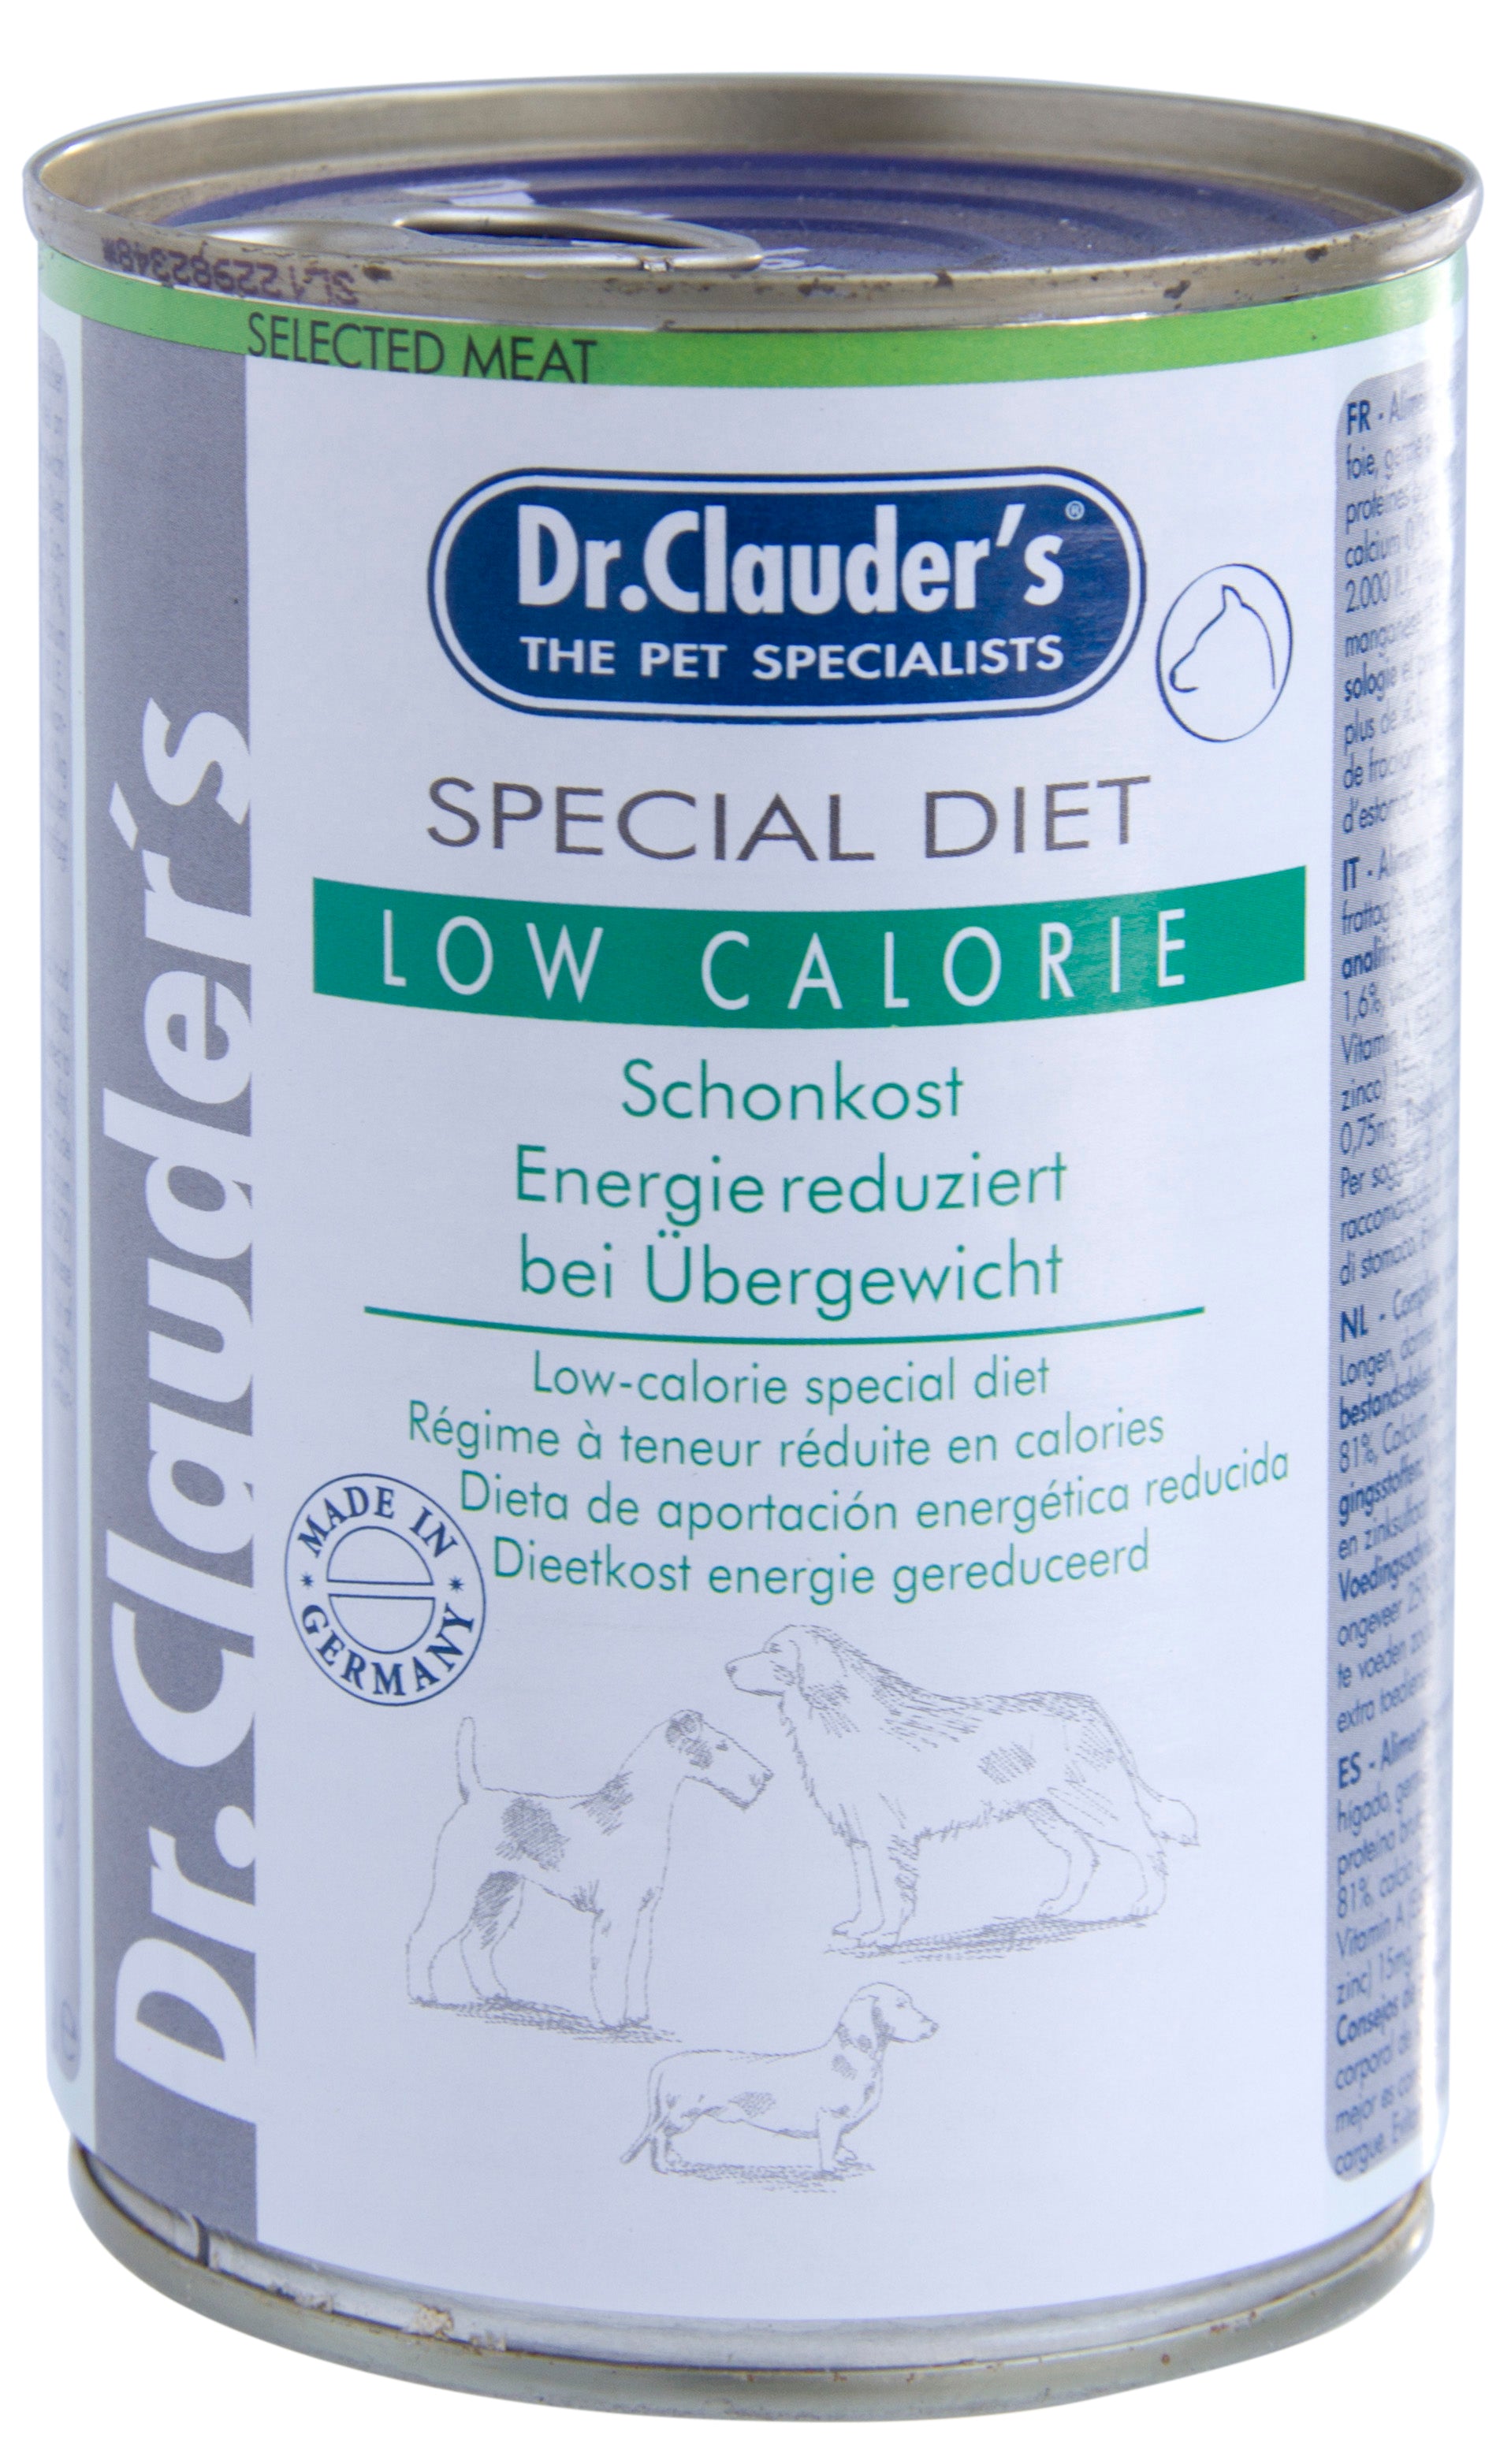 Artikel mit dem Namen Dr.Clauder's Special Diet LowCalorie im Shop von zoo.de , dem Onlineshop für nachhaltiges Hundefutter und Katzenfutter.